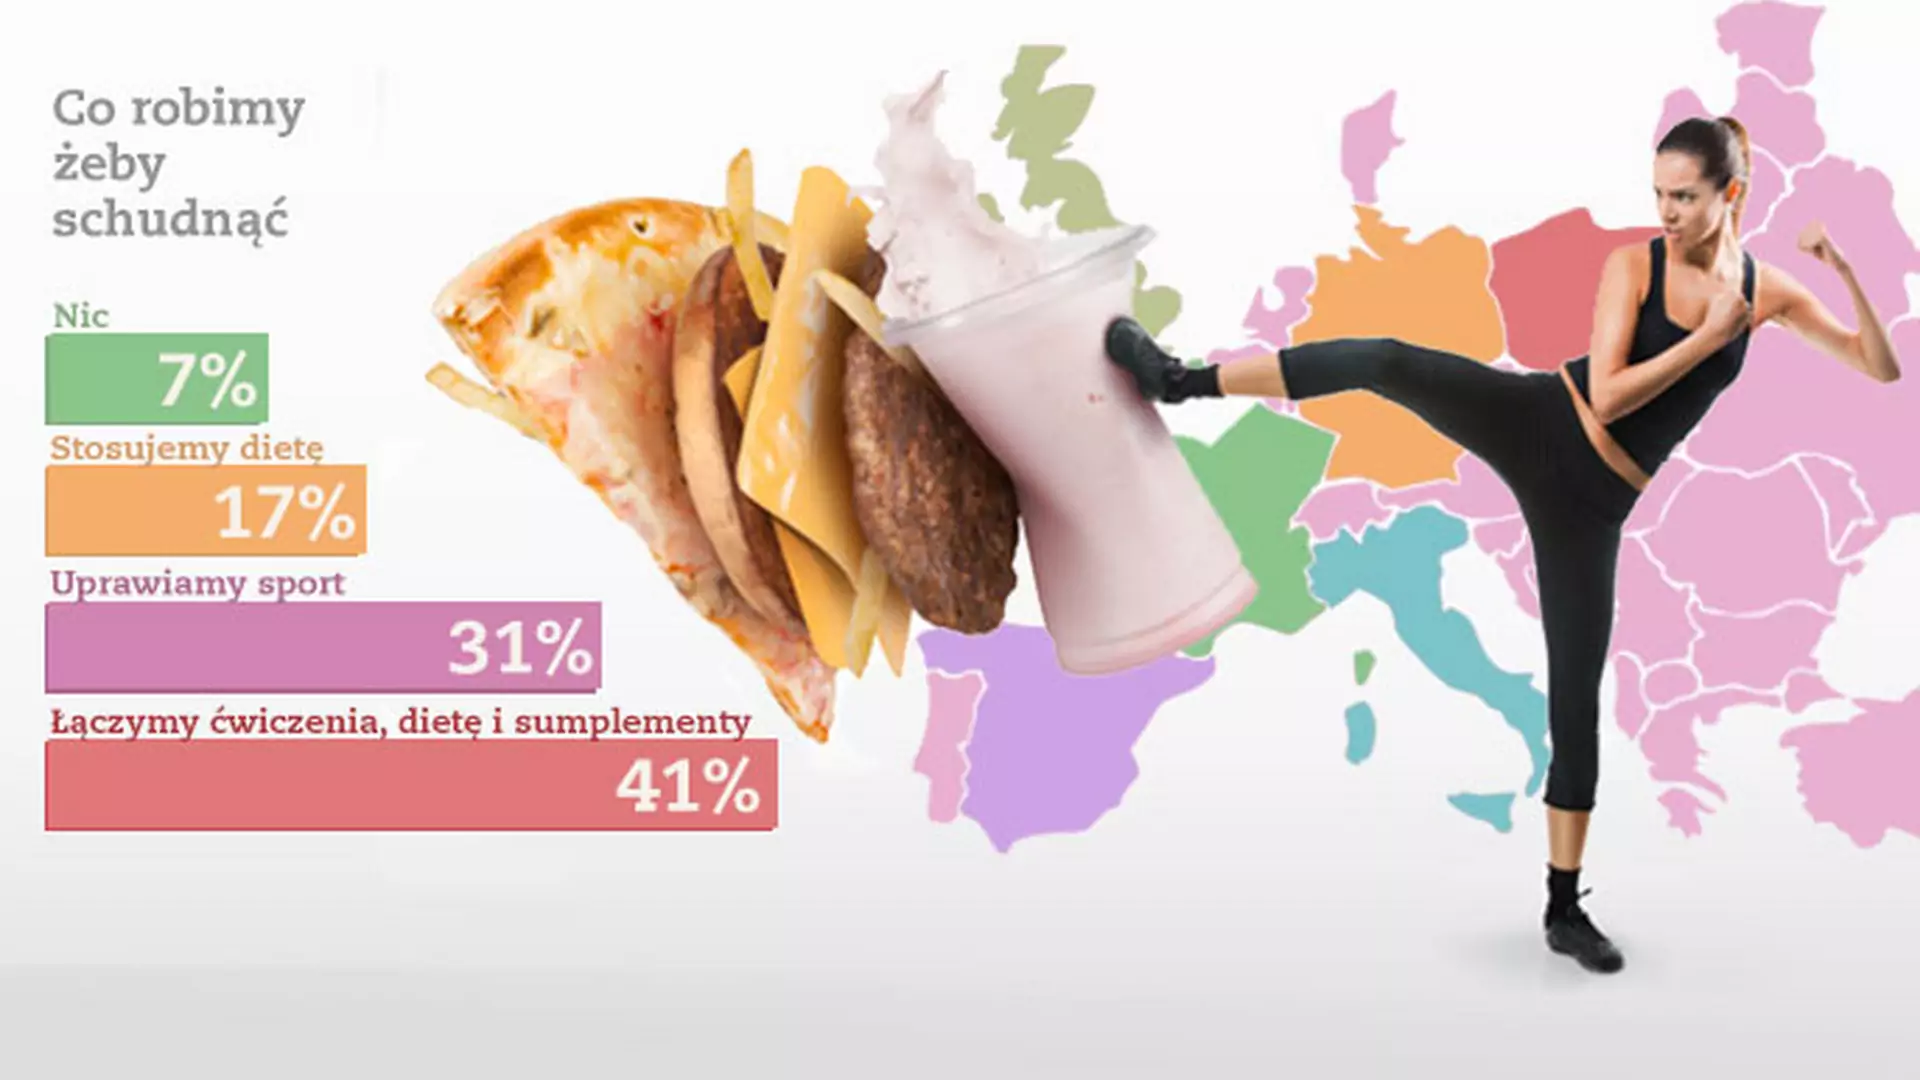 Dieta & fitness - wyniki europejskiej ankiety ofeminin.pl (+komentarz eksperta i INFOGRAFIKA)